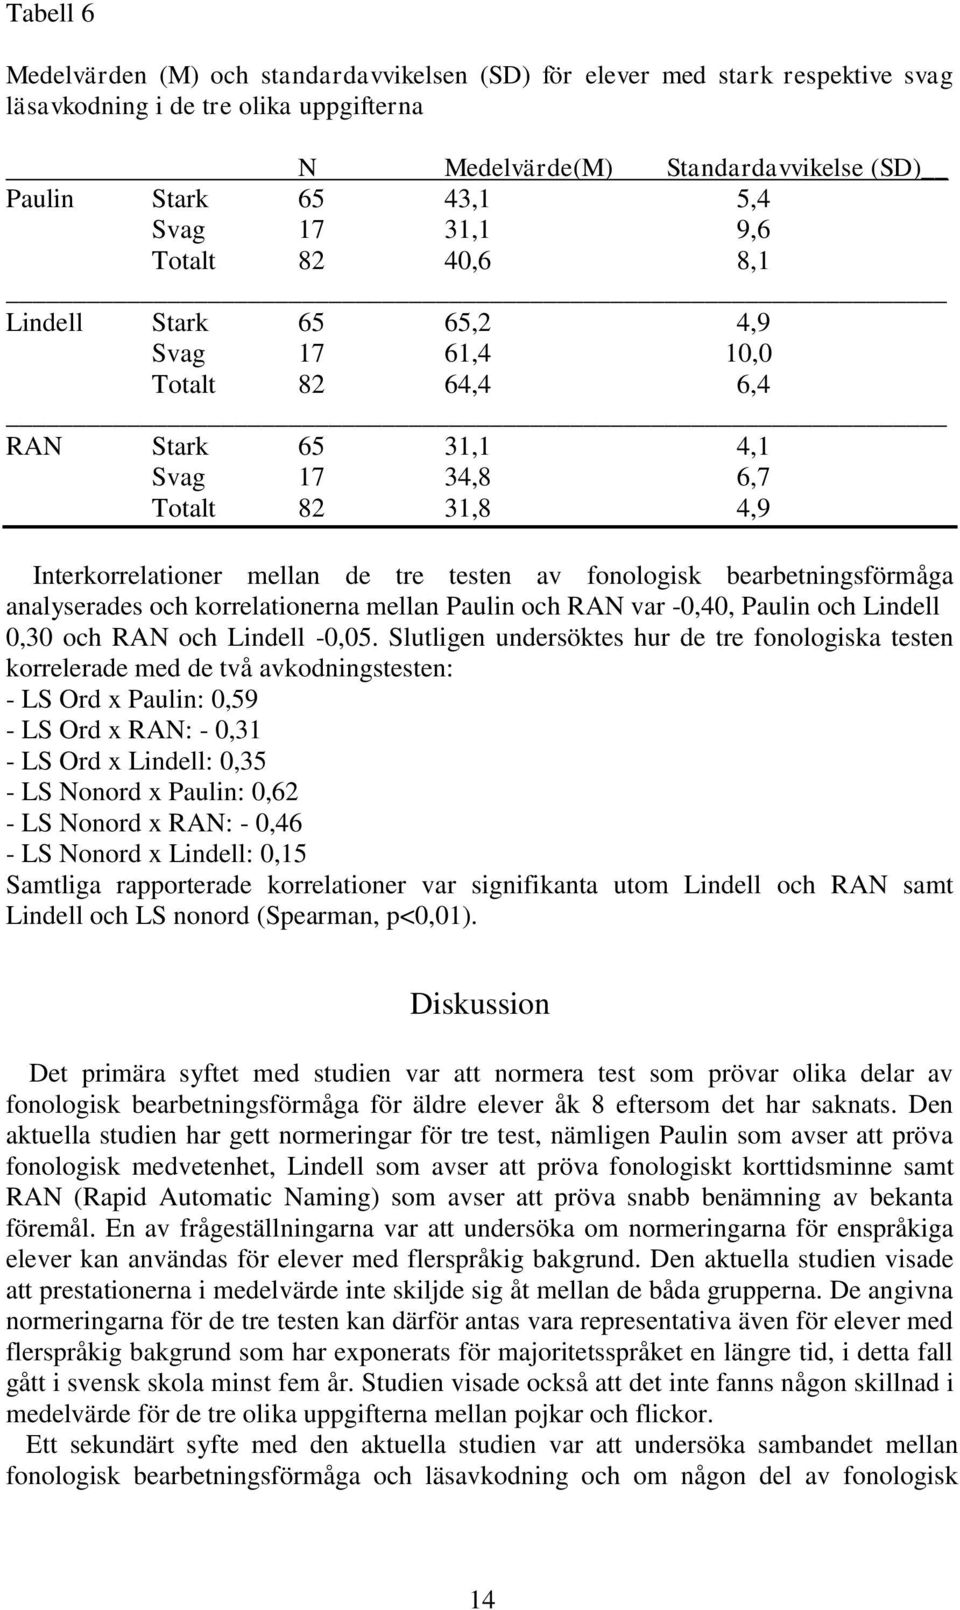 fonologisk bearbetningsförmåga analyserades och korrelationerna mellan Paulin och RAN var -0,40, Paulin och Lindell 0,30 och RAN och Lindell -0,05.